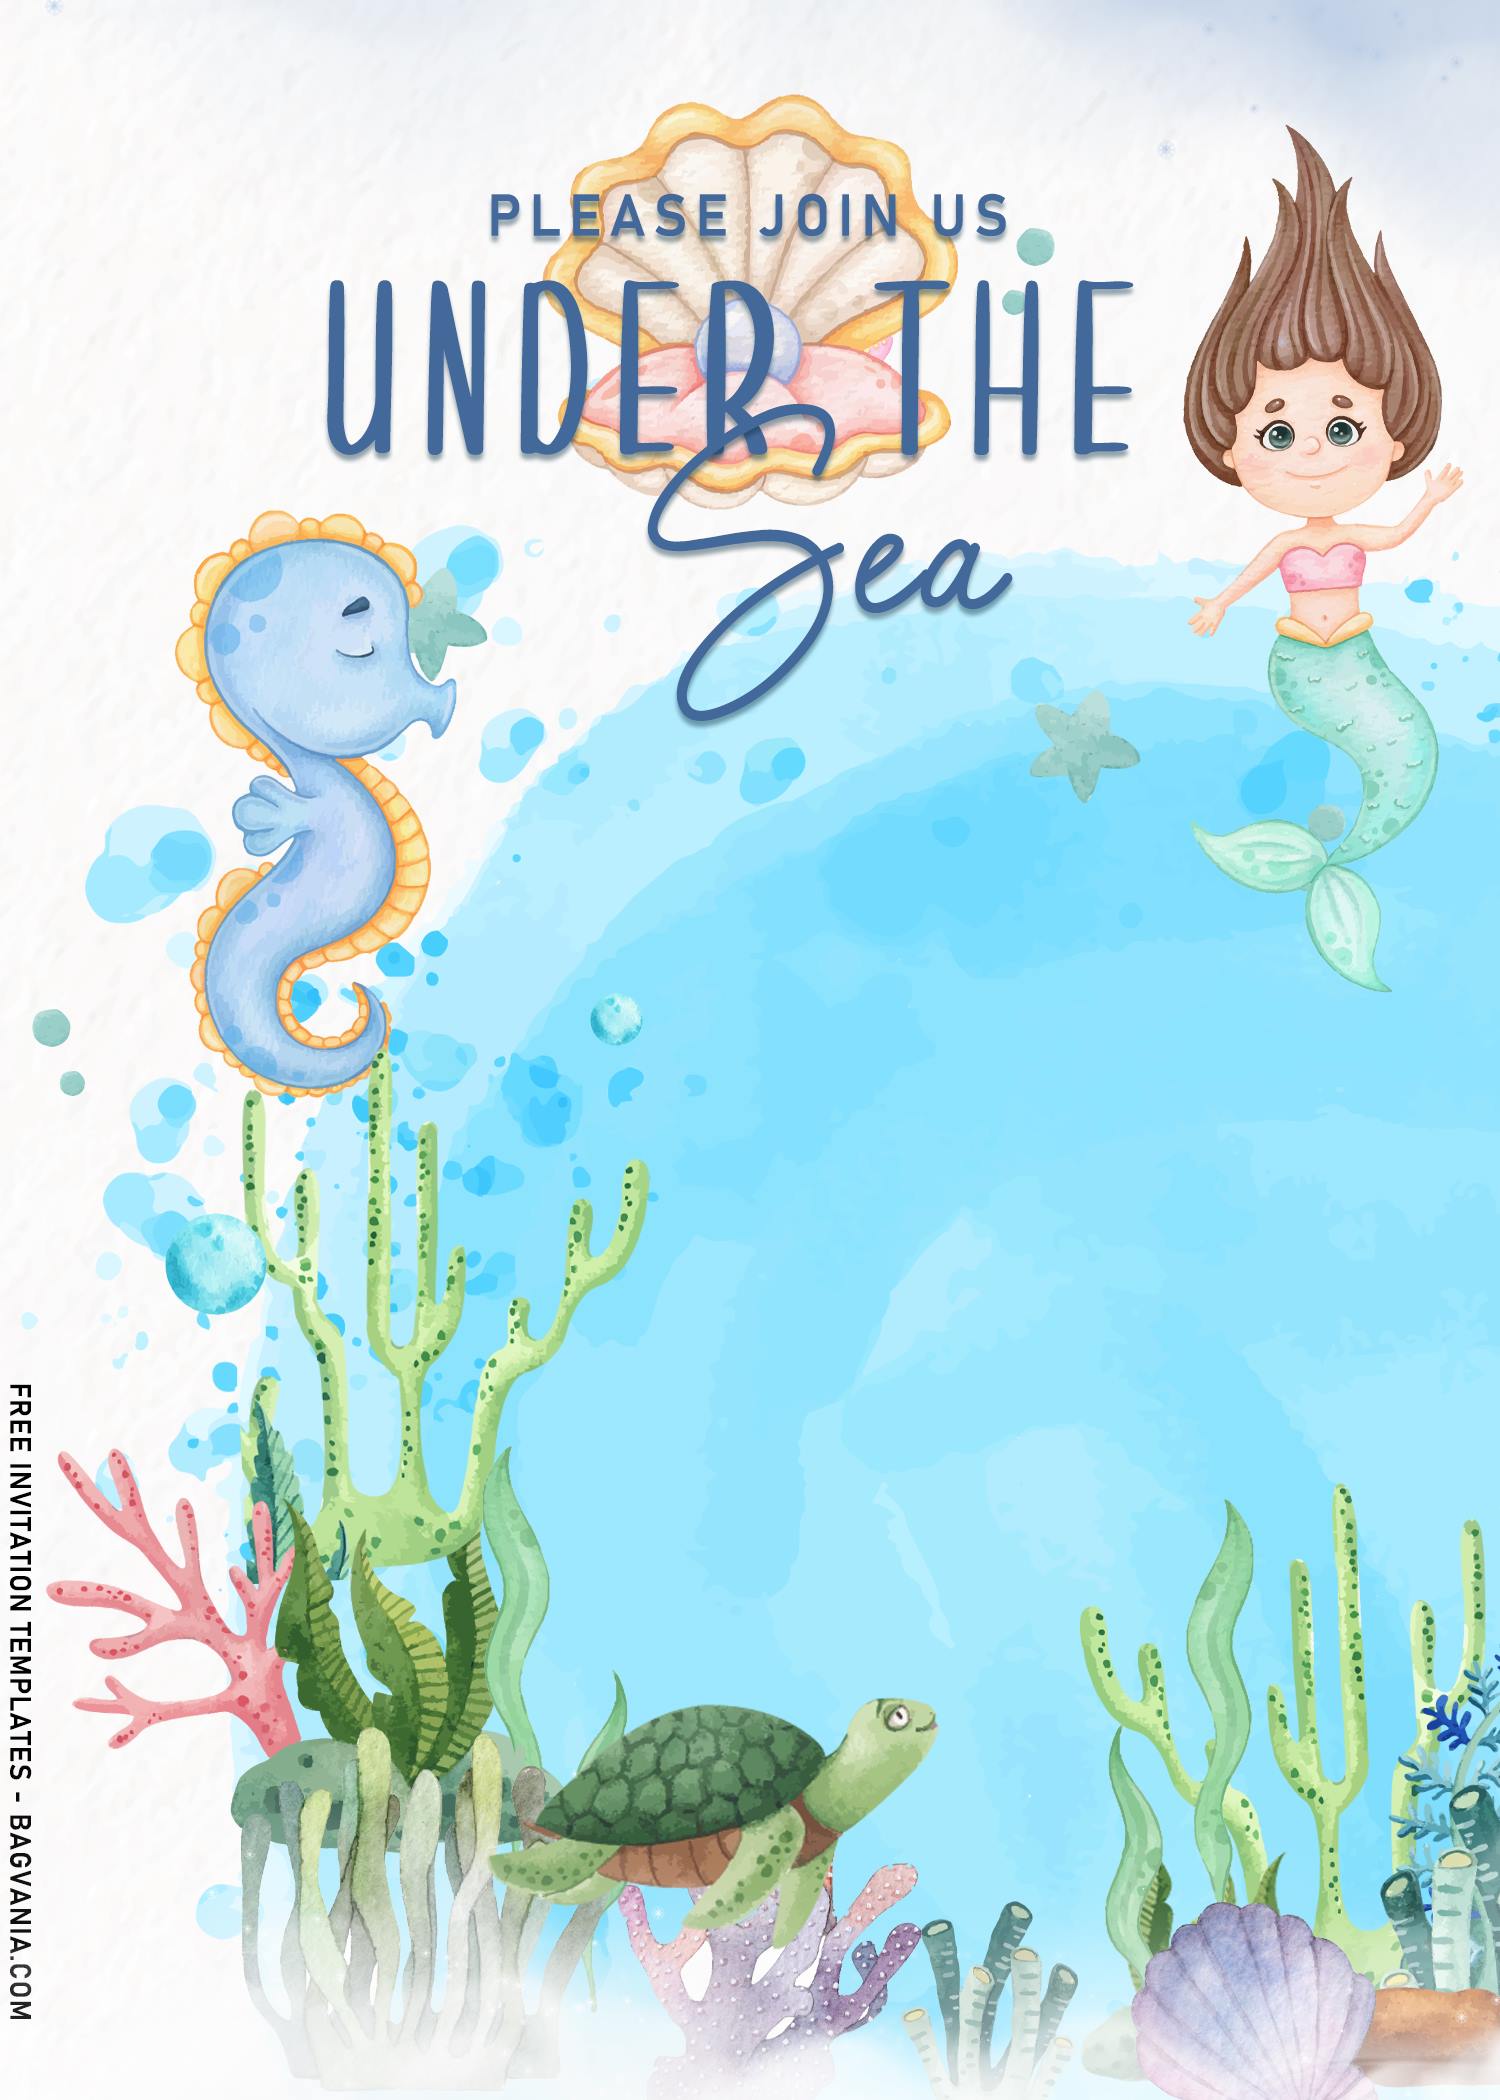 Under The Sea Invitation Template